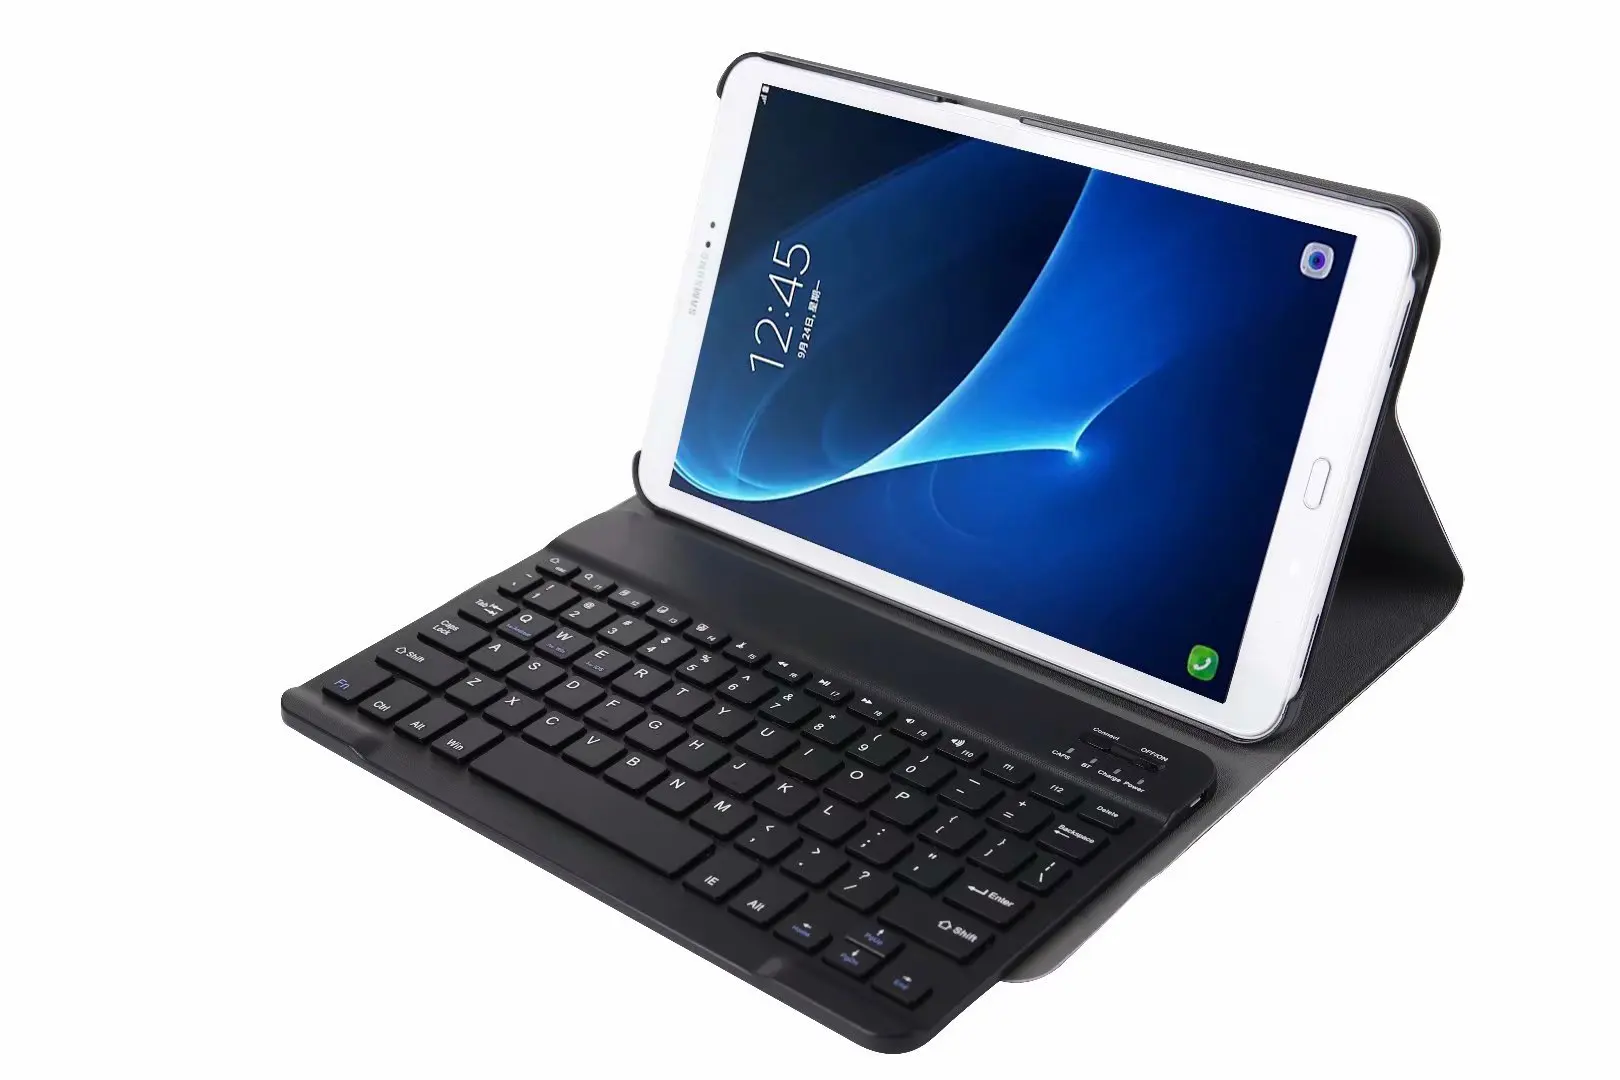 Отдельно стоящая Беспроводная Bluetooth клавиатура SM-T580 чехол для Samsung Galaxy Tab A A6 10,1 T580 T585 SM-585 подставка чехол Funda+ Flim+ ручка